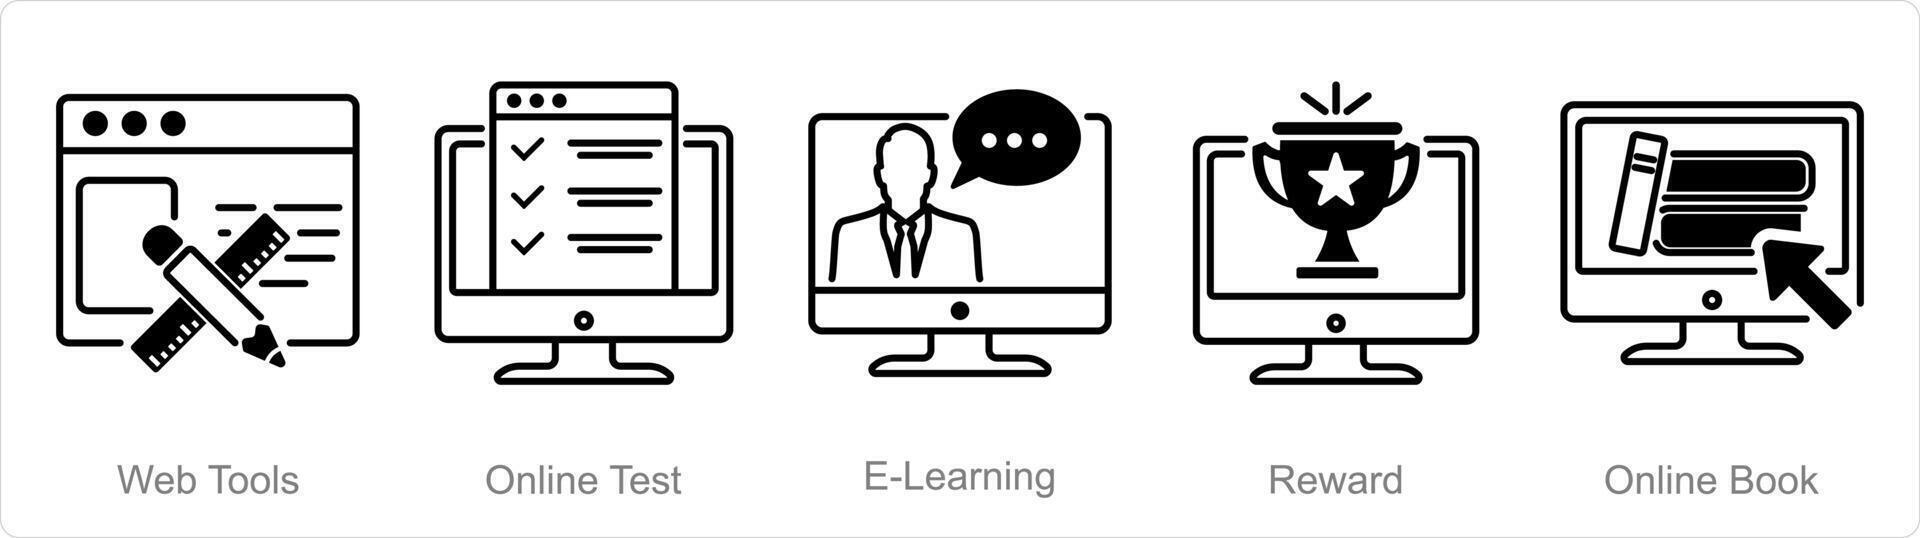 en uppsättning av 5 onlineutbildning ikoner som webb verktyg, uppkopplad testa, e-learning vektor